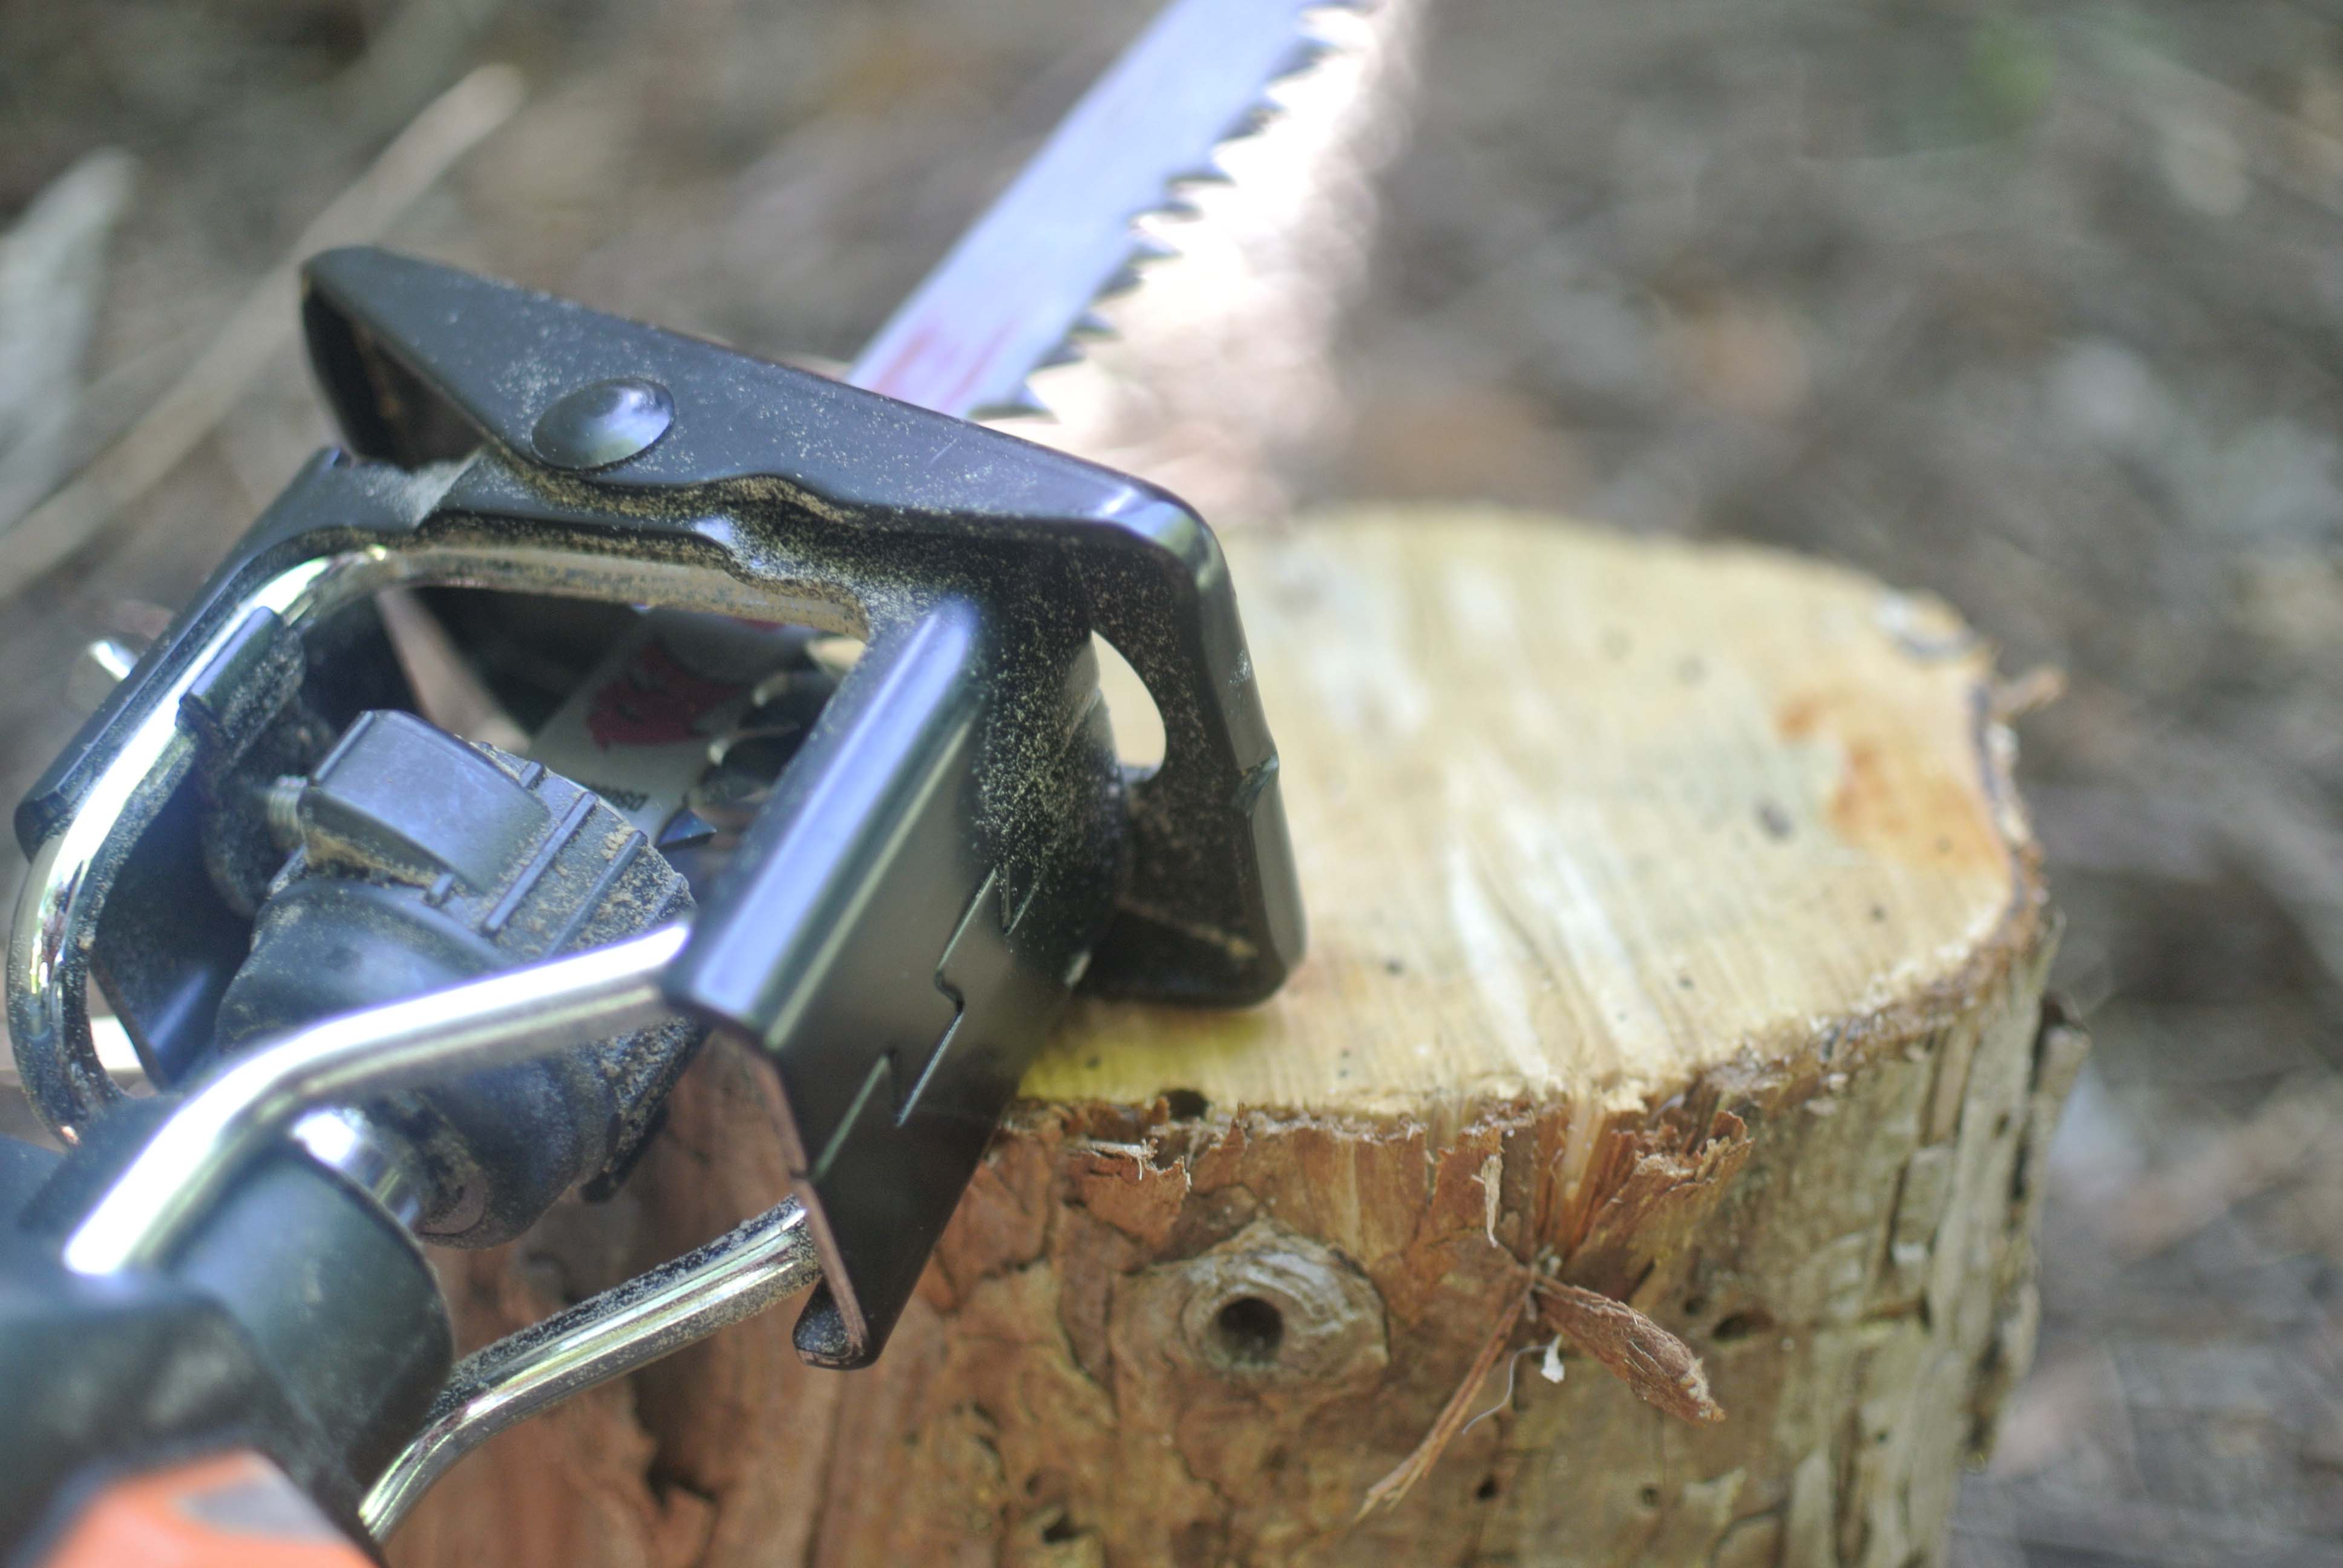 
Cutting log
